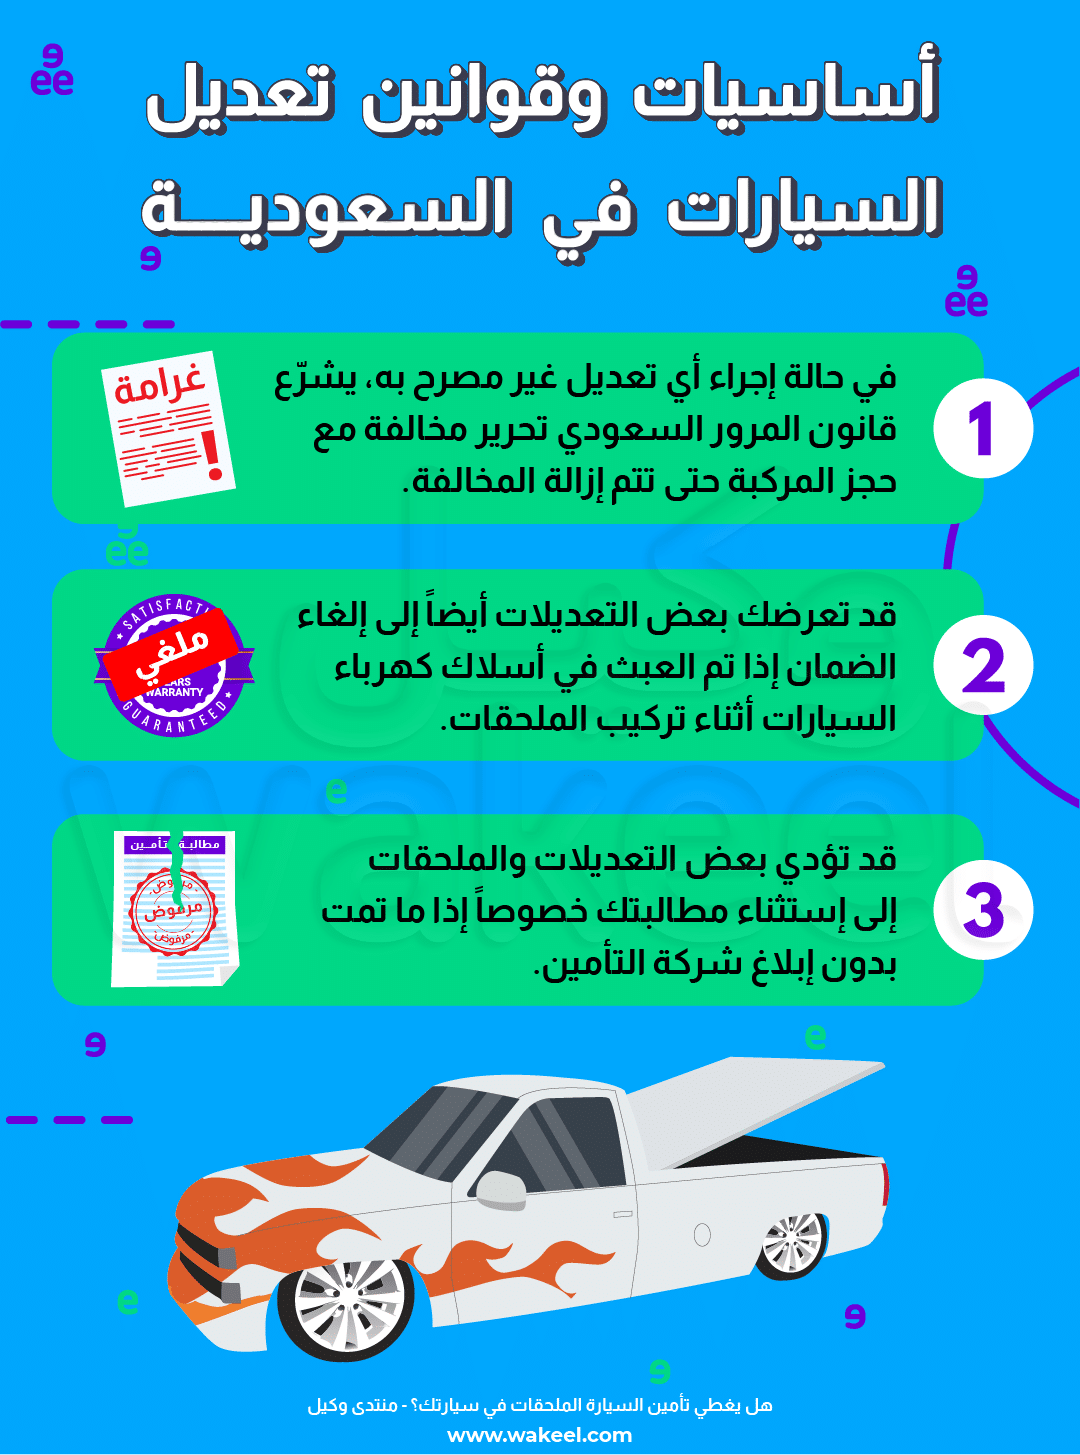 إنفوجرافيك يقدم نصائح أساسية لعشاق السيارات المهتمين بالتعديلات ضمن لوائح المملكة العربية السعودية.